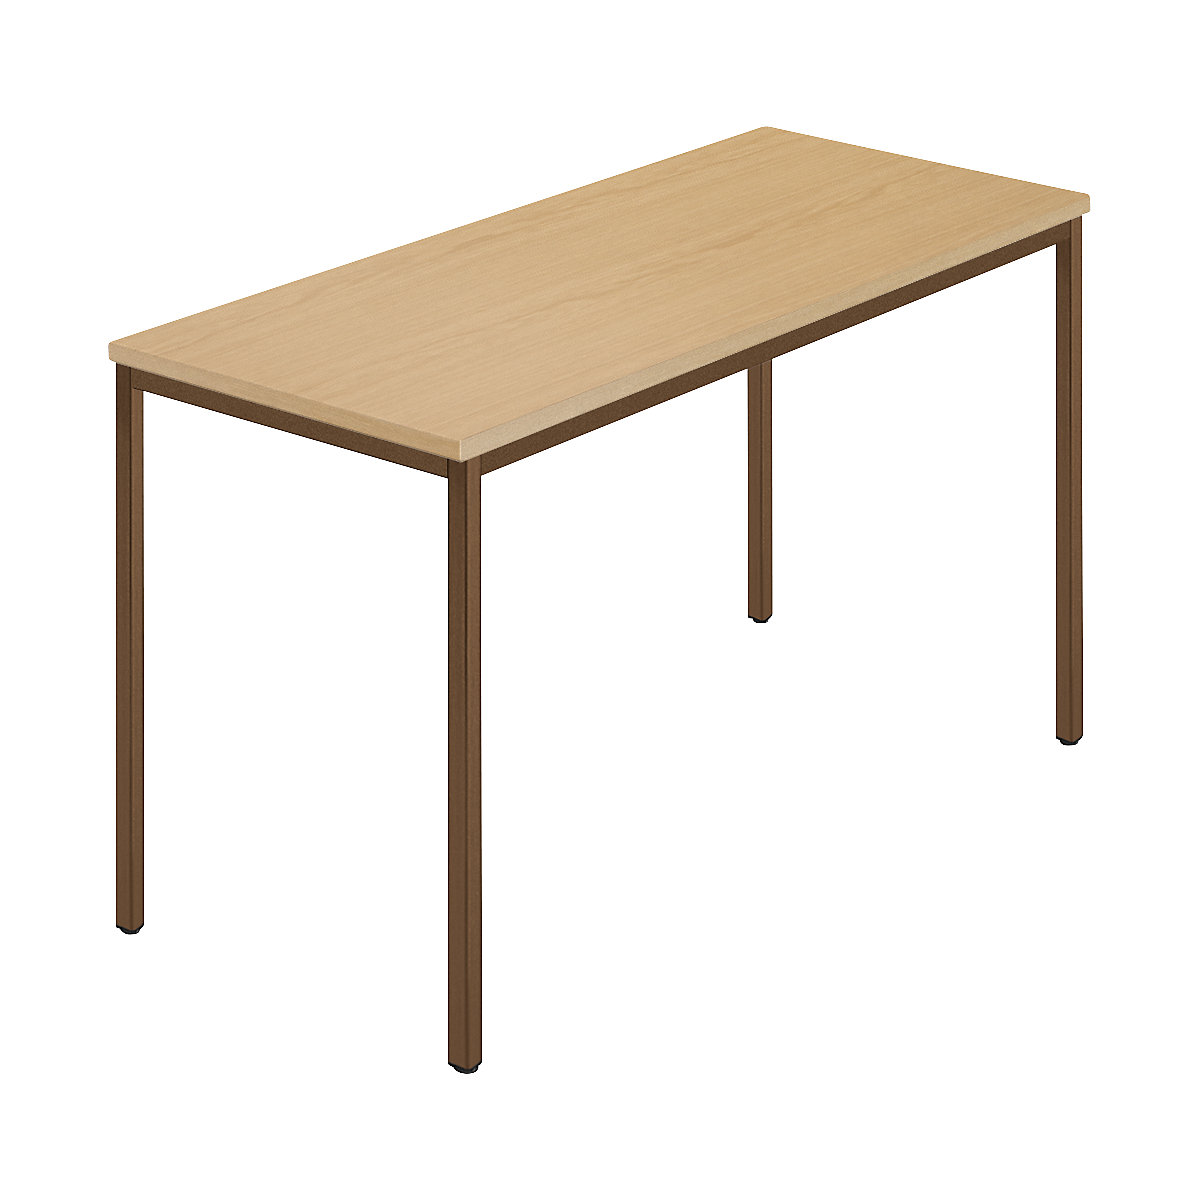 Pravokutni stol, presvučena četverokutna cijev, ŠxD 1200 x 600 mm, prirodna bukva / u smeđoj boji-5